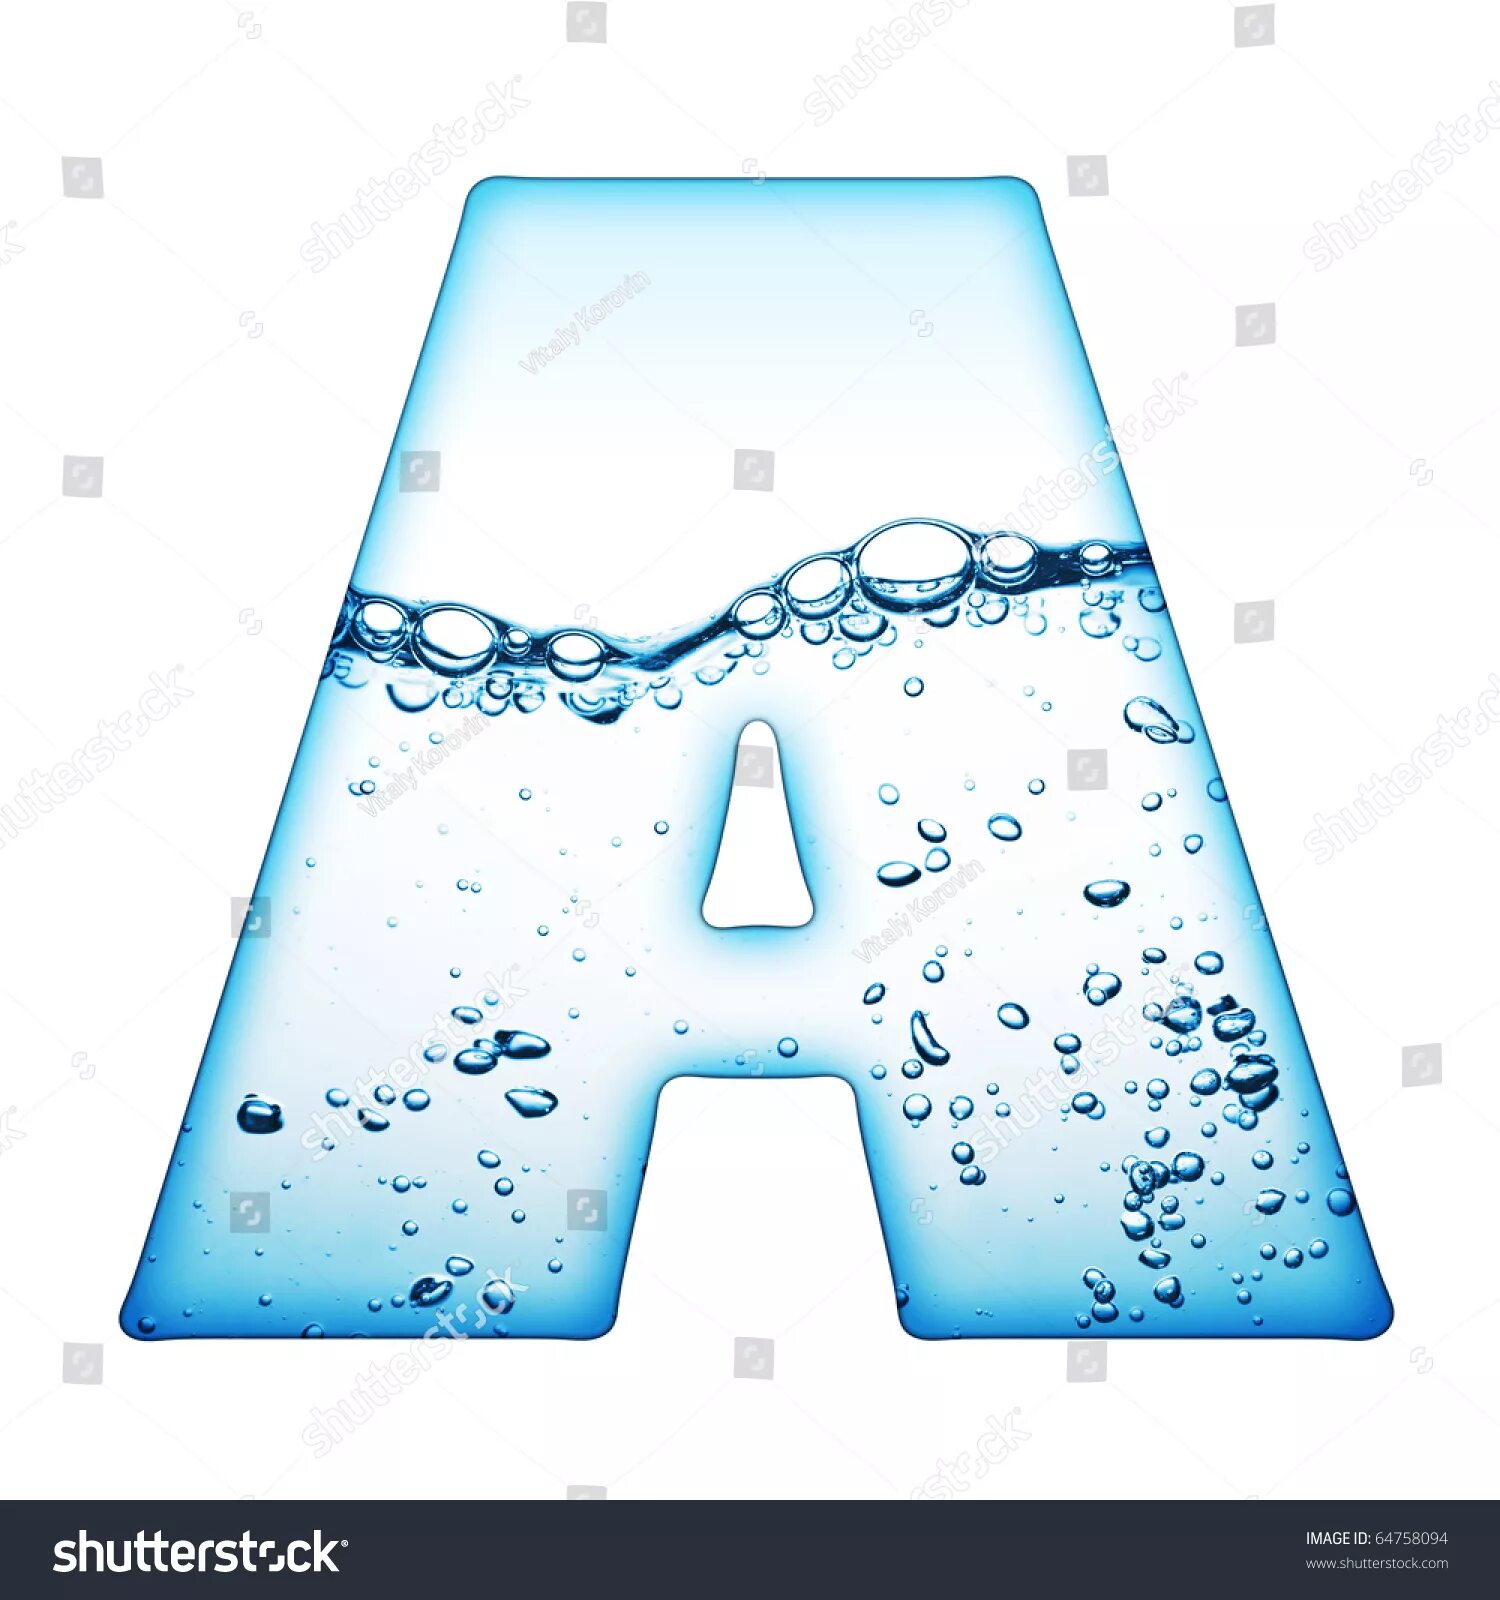 Русские буквы из воды. Водяные буквы. Водяные буквы русские. Буквы алфавита водные. Буквы капли воды